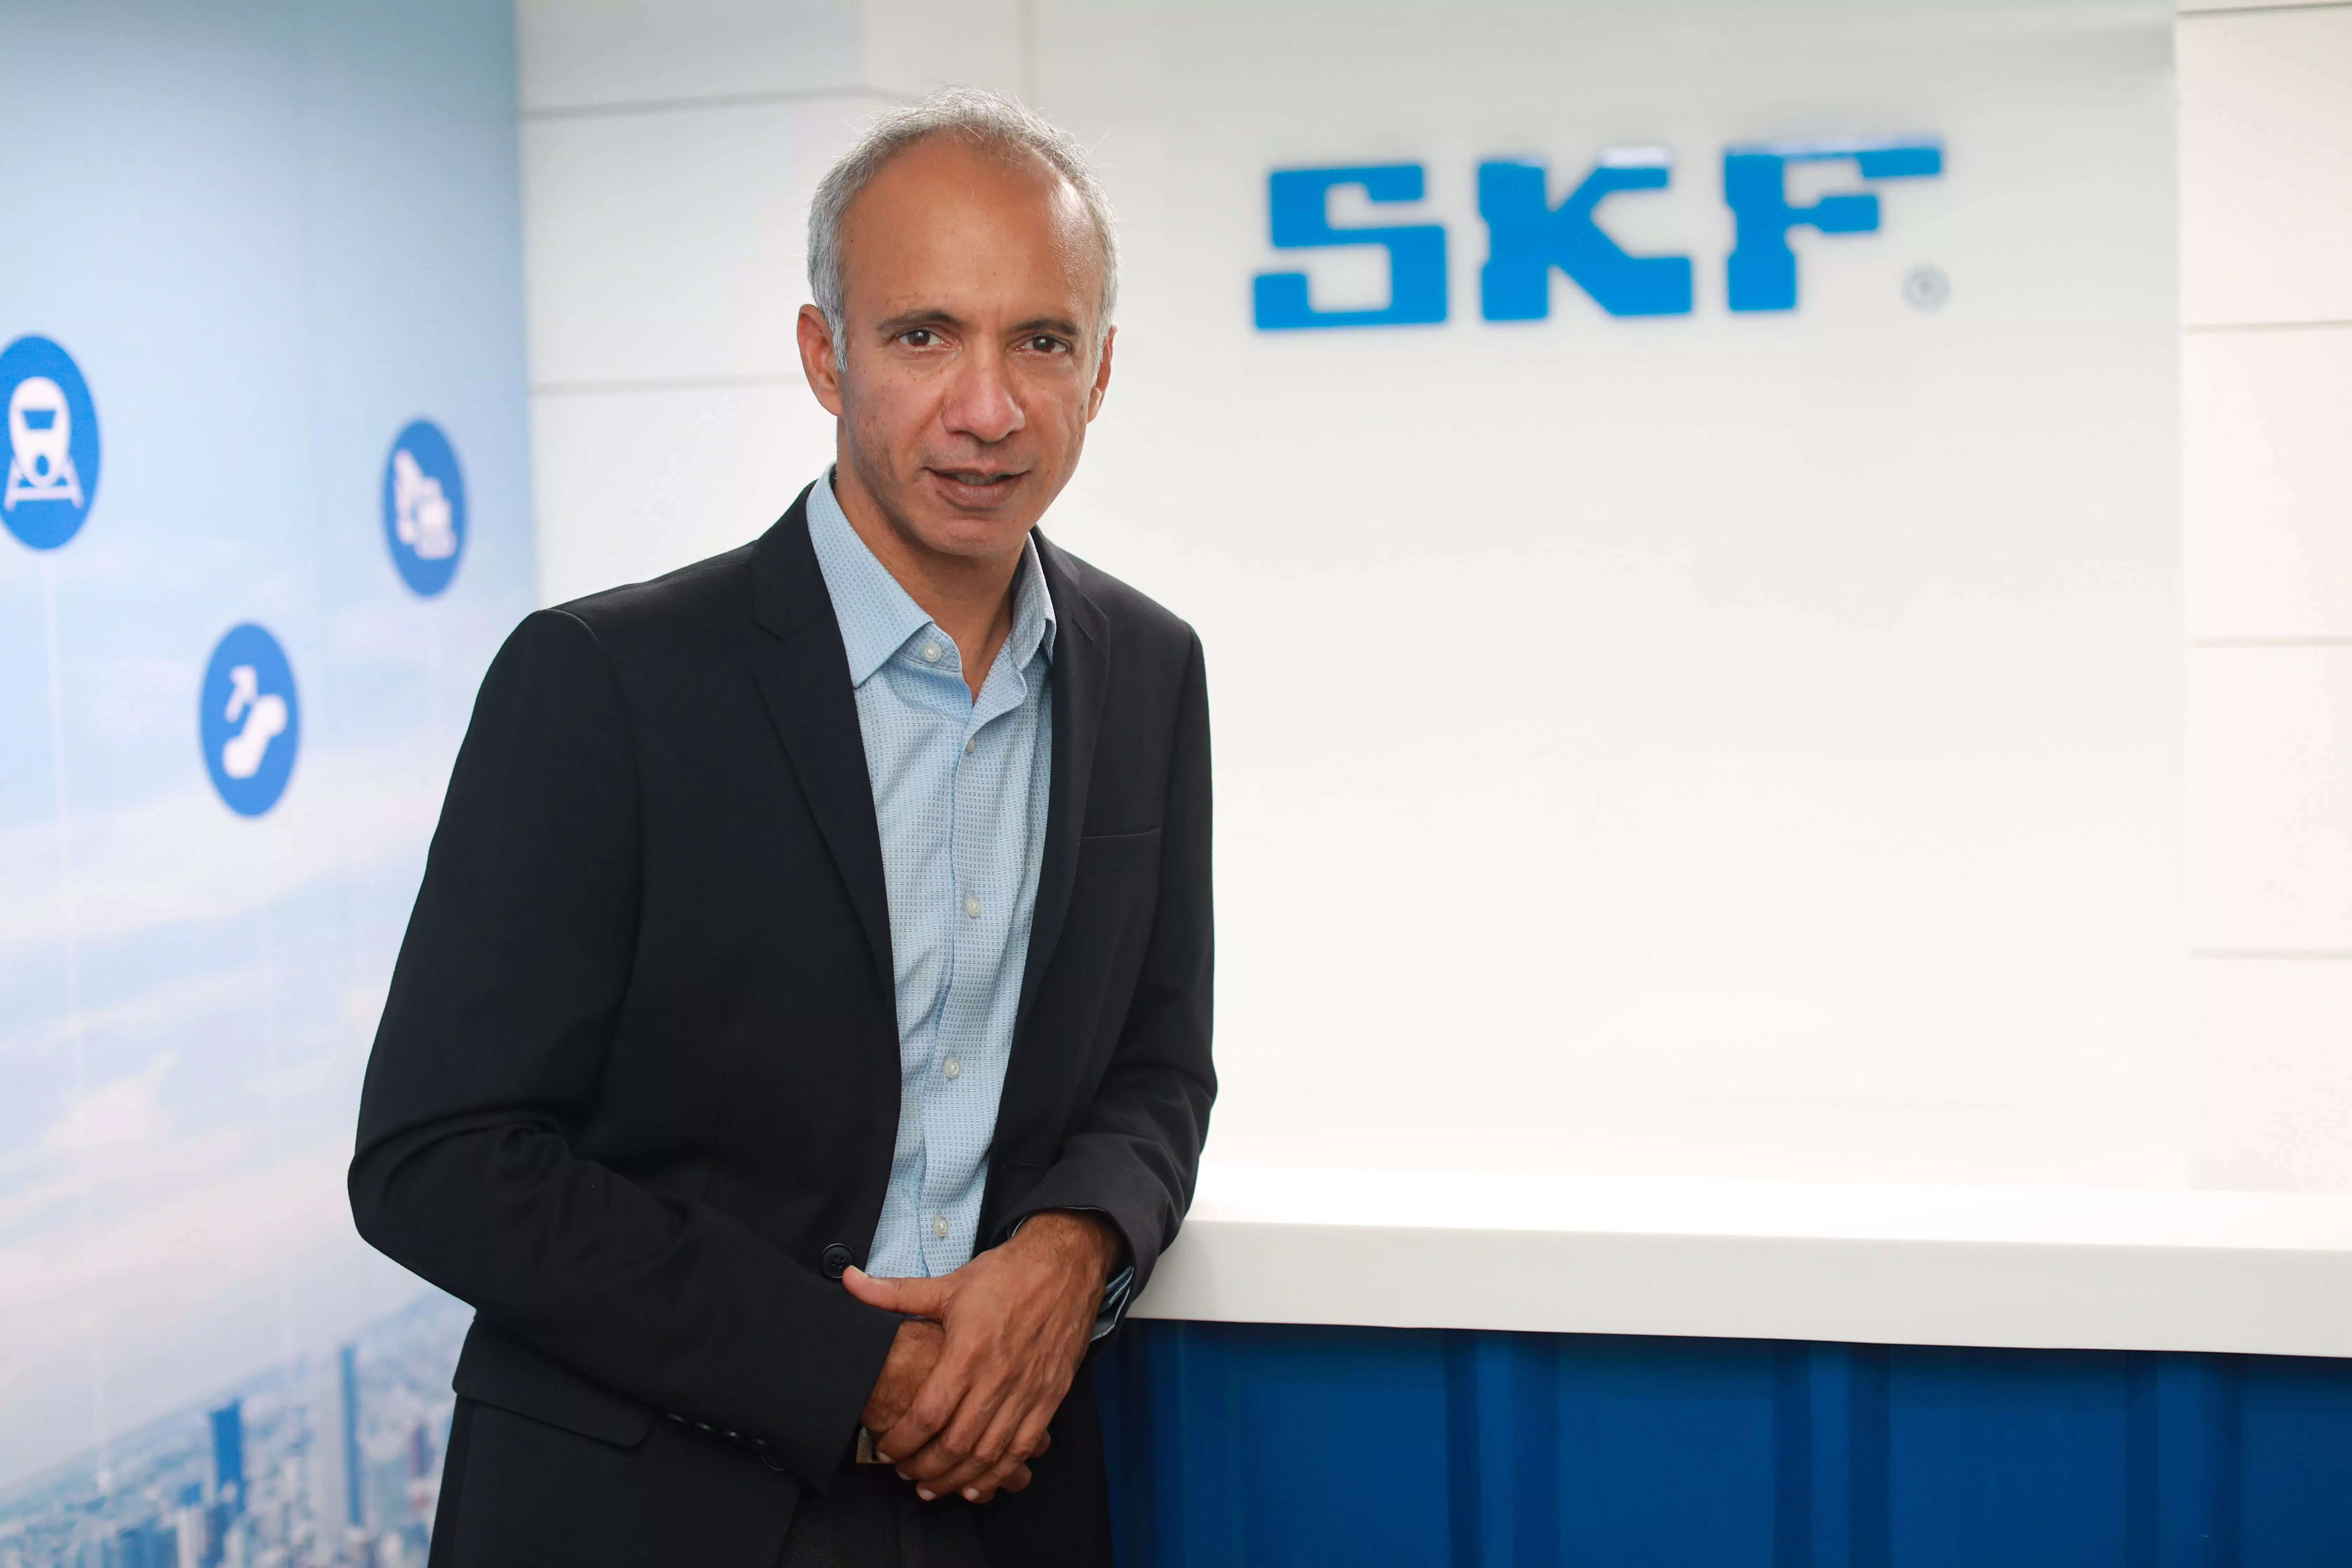  Manish Bhatnagar, Managing Director, SKF India